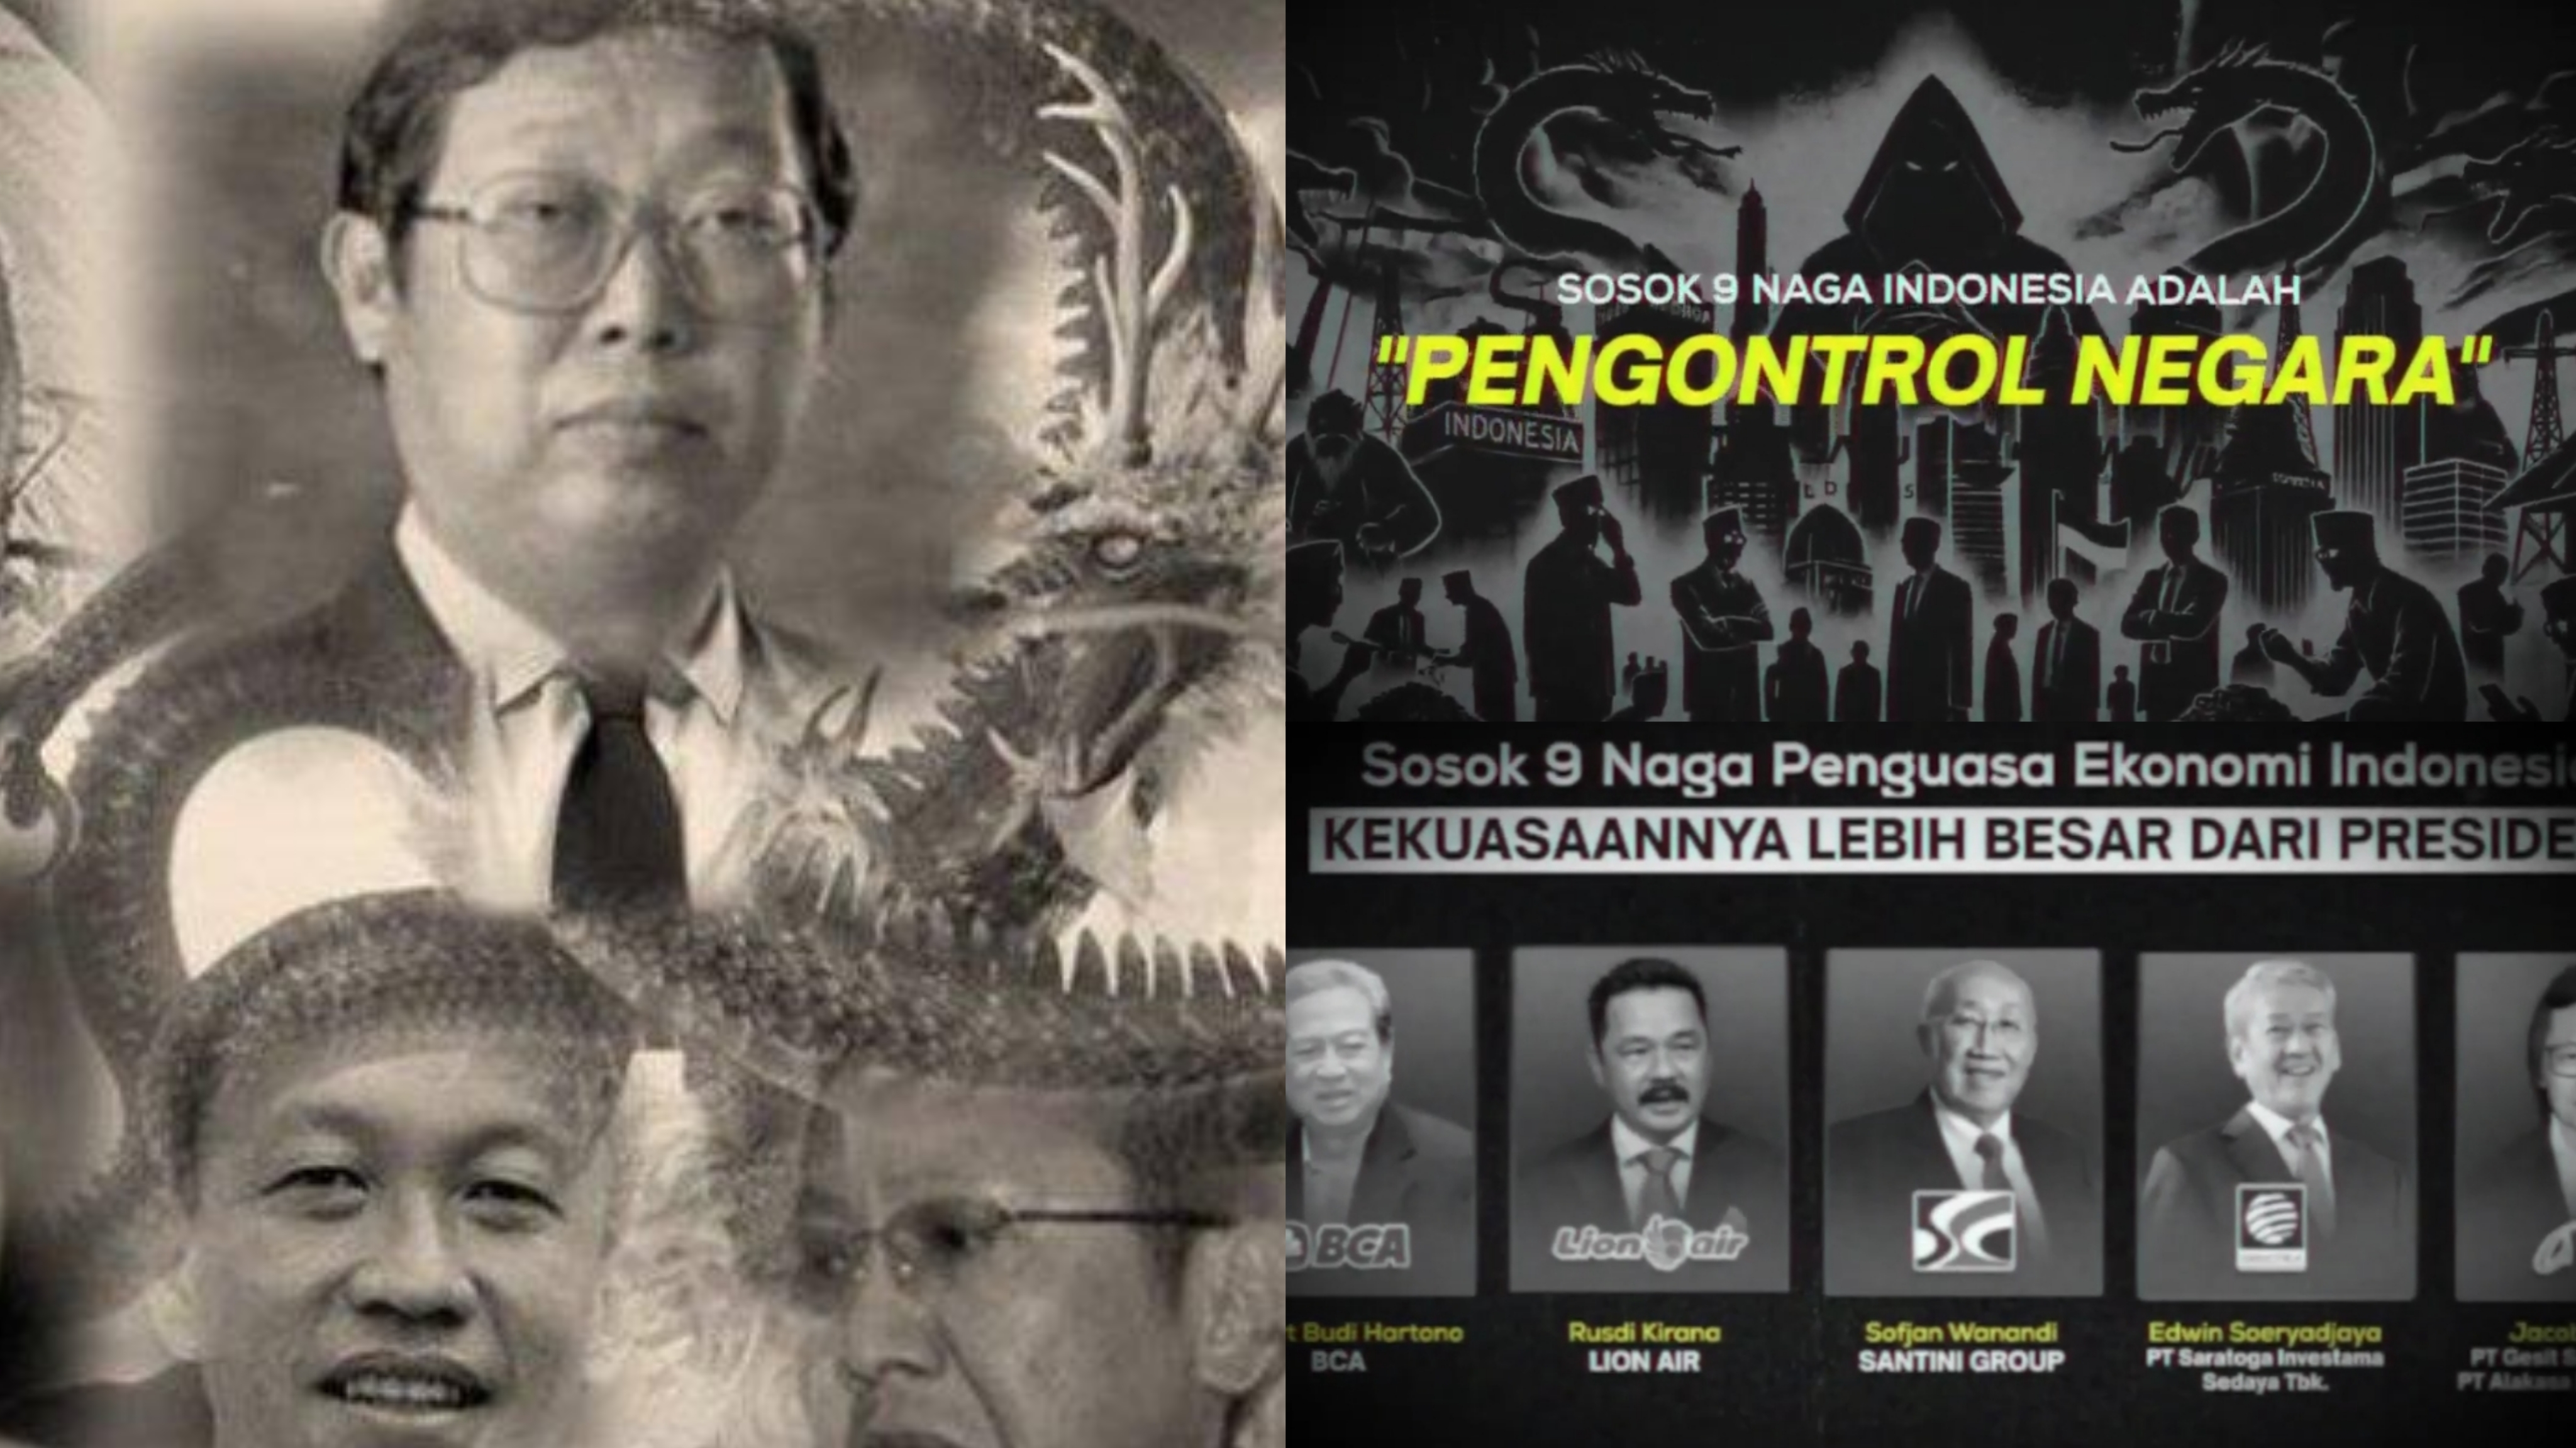 9 Naga Disebut Dalang Pengendali Ekonomi di Indonesia, Punya Kekuasaan Lebih Besar dari Presiden? Kok Bisa?